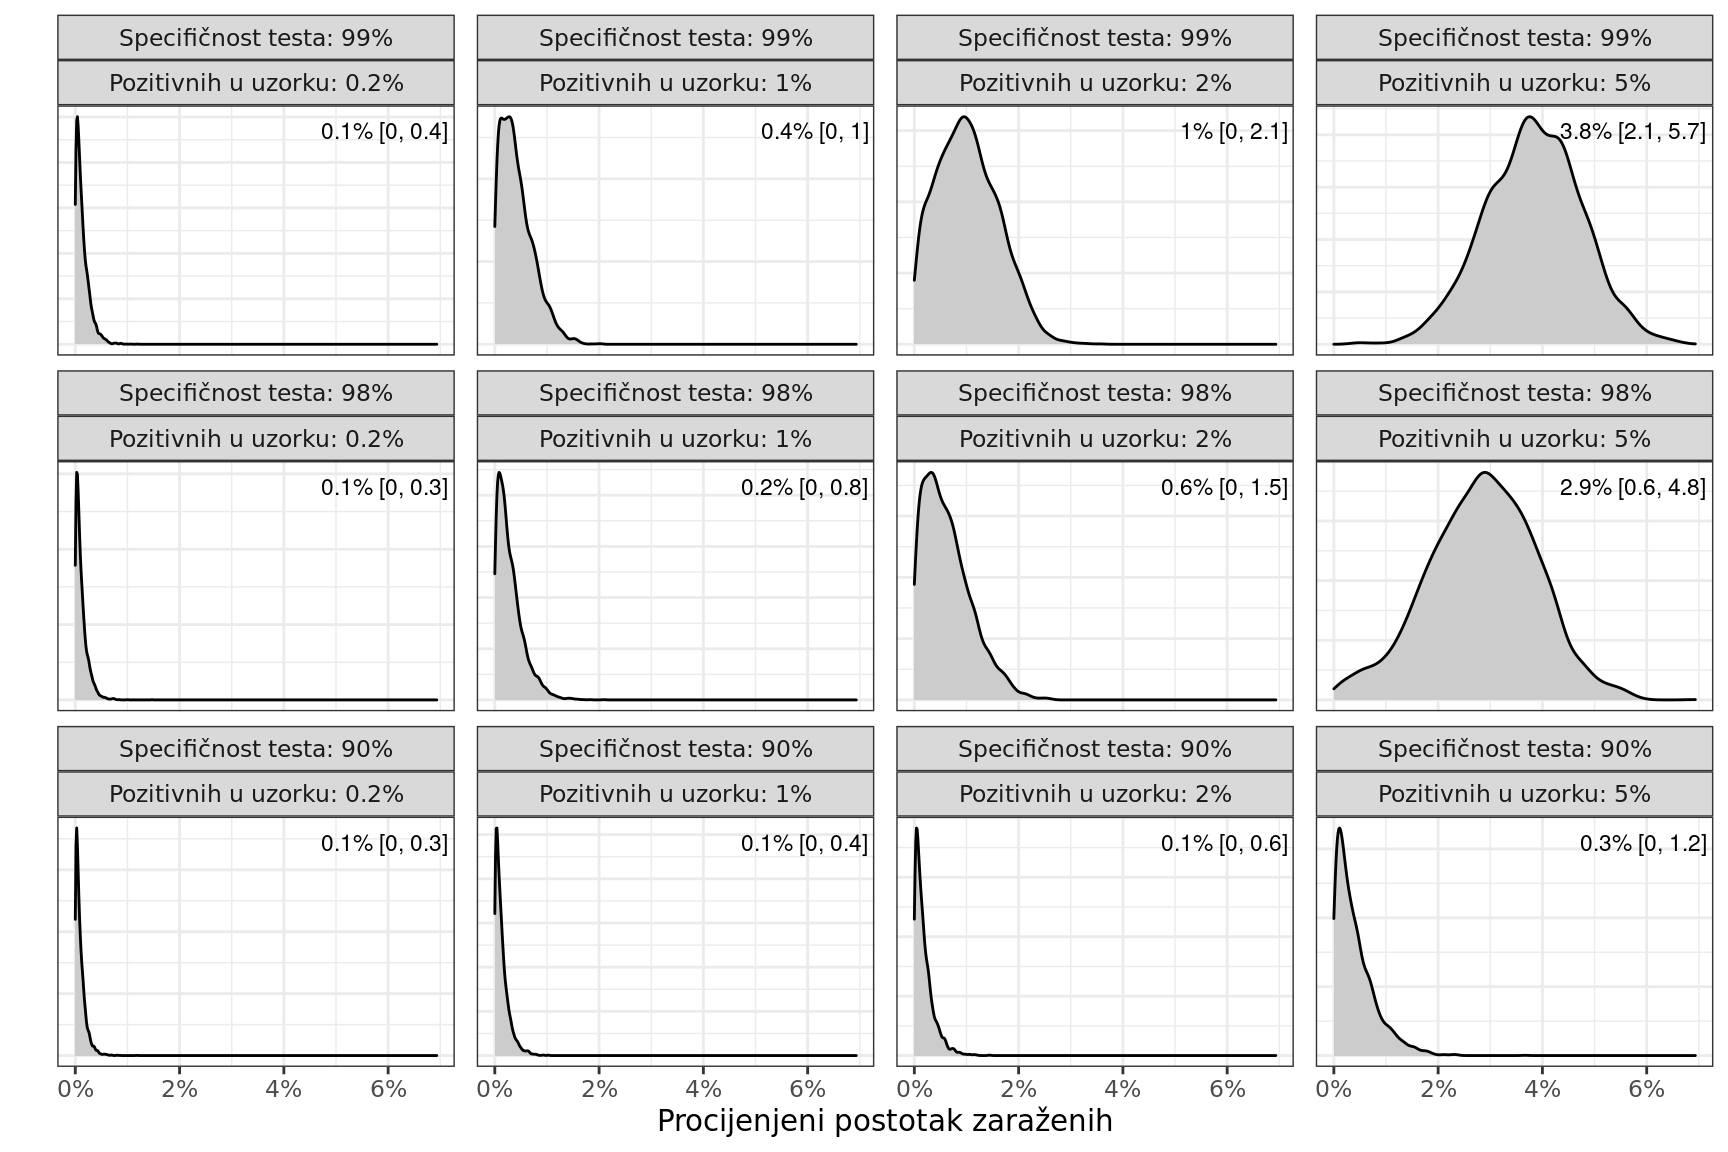 Različiti scenariji očekivanog rezultata serološkog ispitivanja opće populacije u Hrvatskoj. Krivuljom je prikazana je raspodjela posteriorne vjerojatnosti procjene srednje vrijednosti, a brojčano je navedena srednja vrijednost i 95% kredibilni interval procjene.